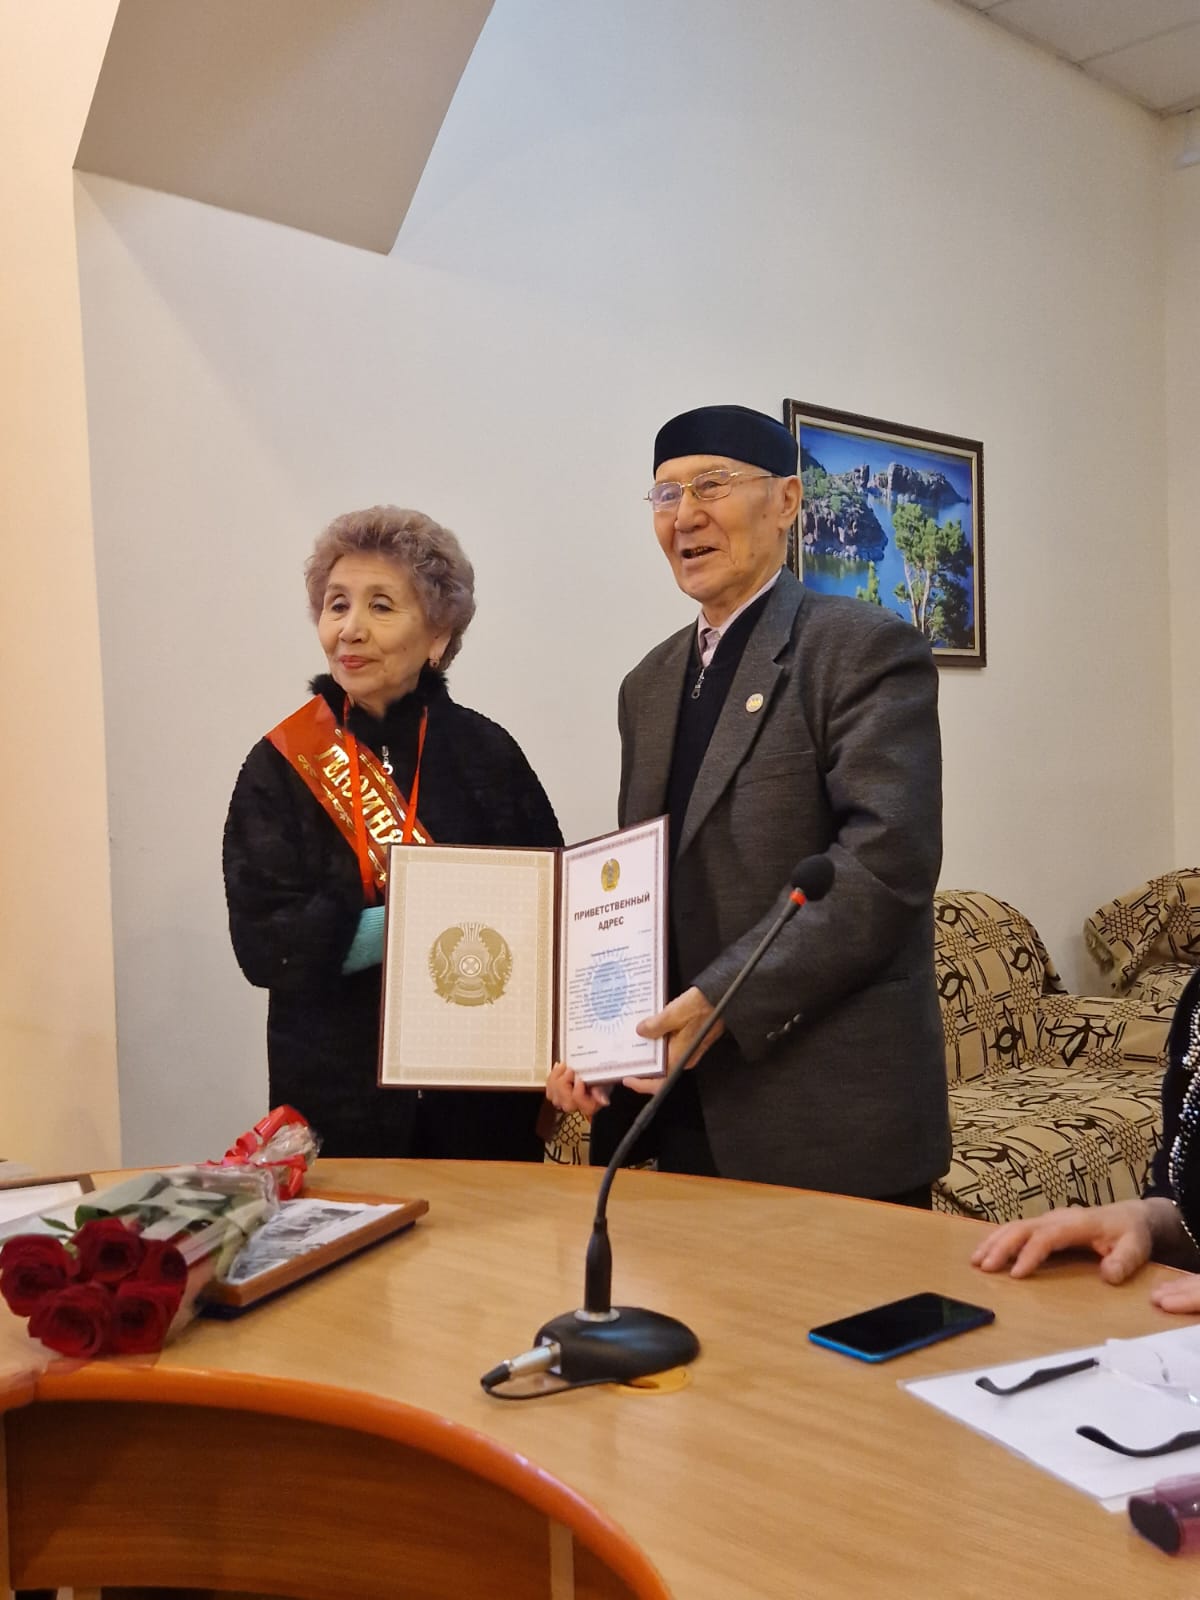 23 ноября текущего года в областном совете ветеранов состоялась встреча посвящённая юбилею-75-летию Почётного гражданина Павлодарского района ЧУЛАНОВОЙ НИНЫ АСКЕНОВНЫ